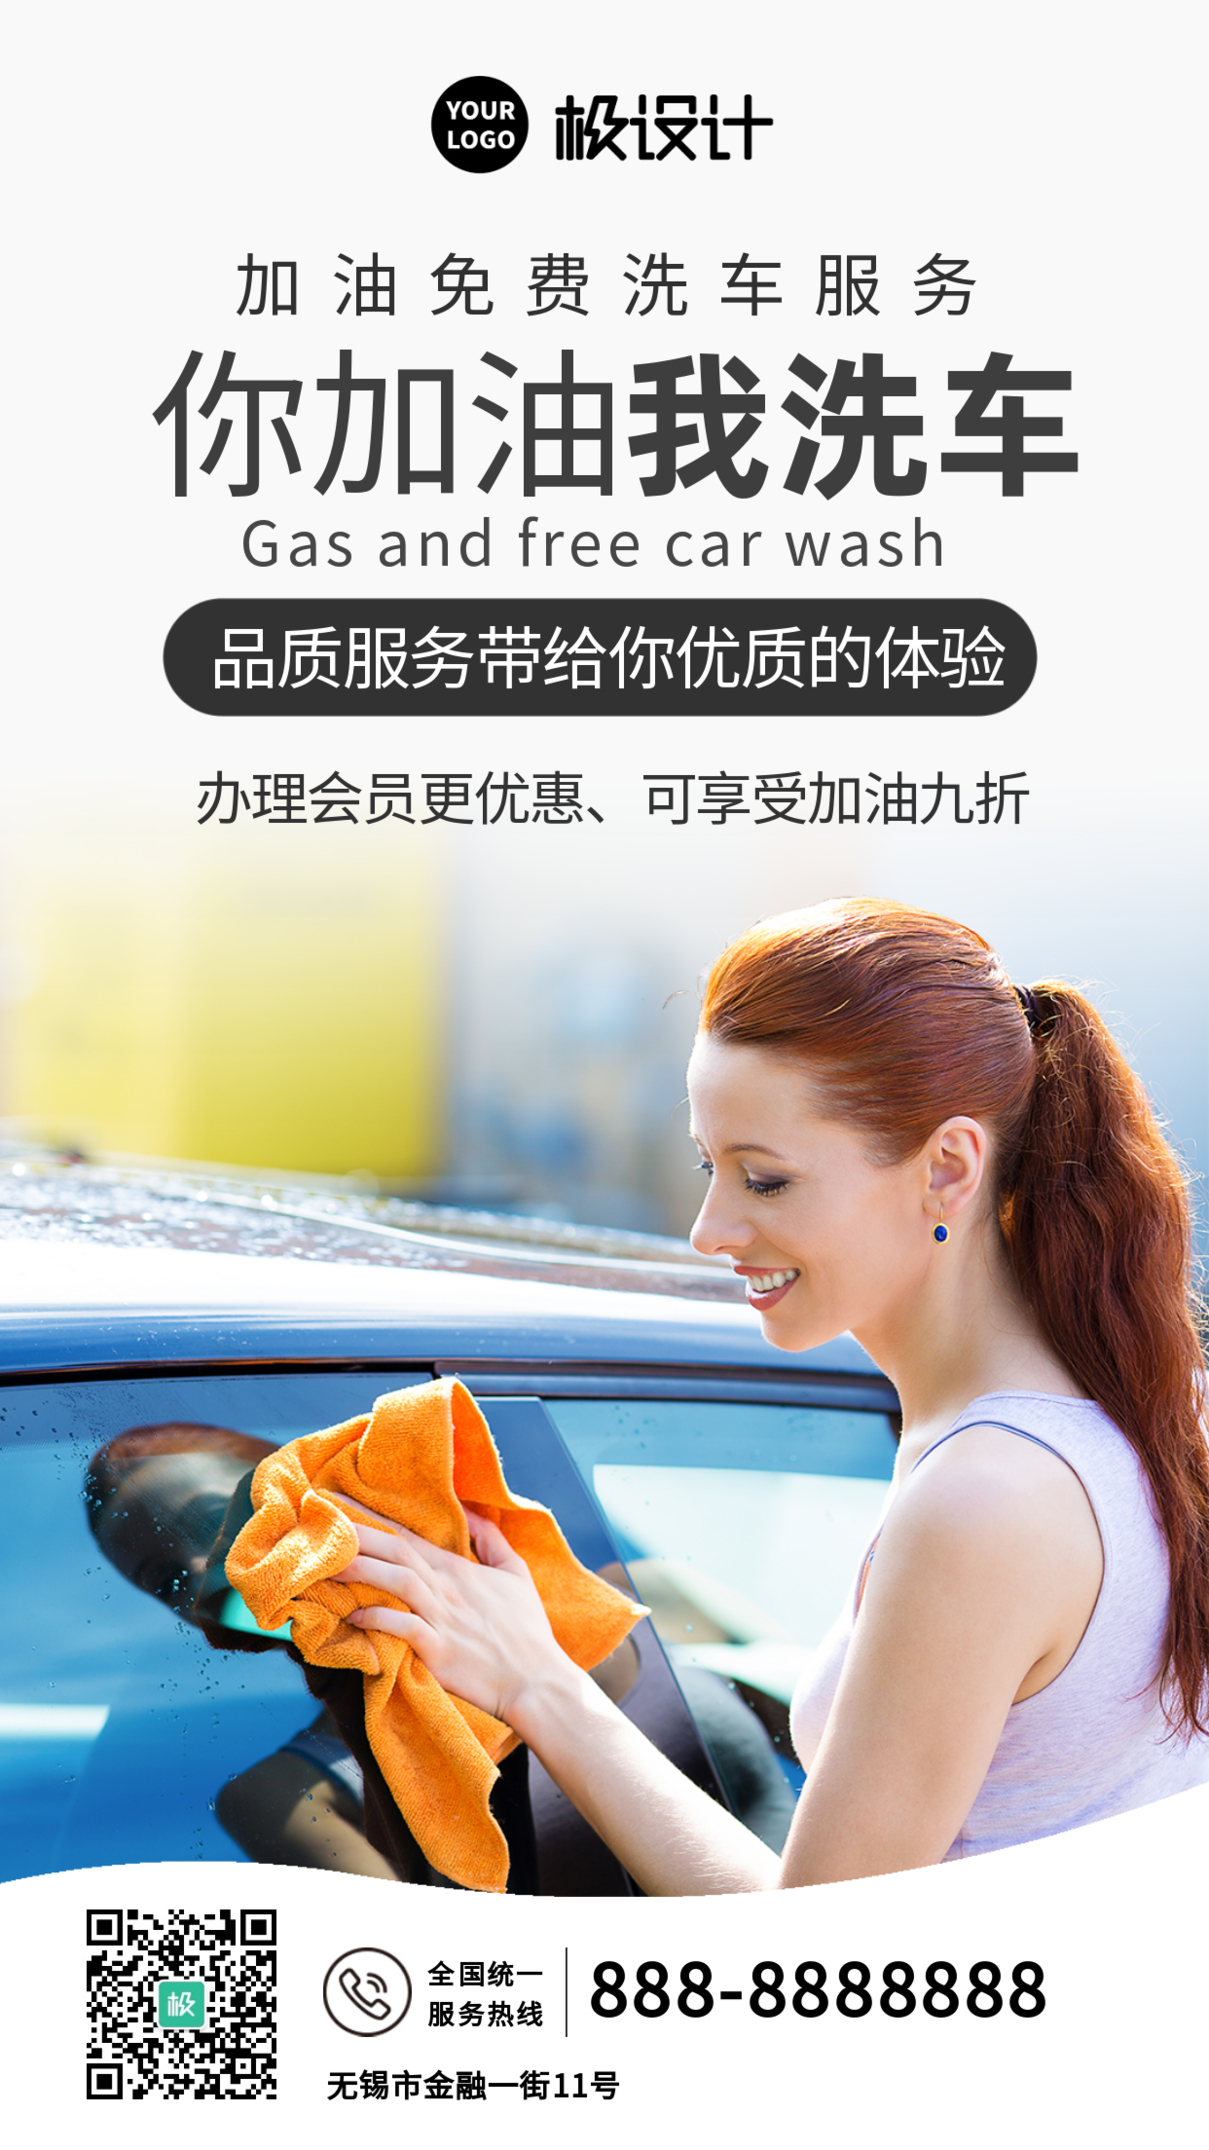 加油免费洗车服务